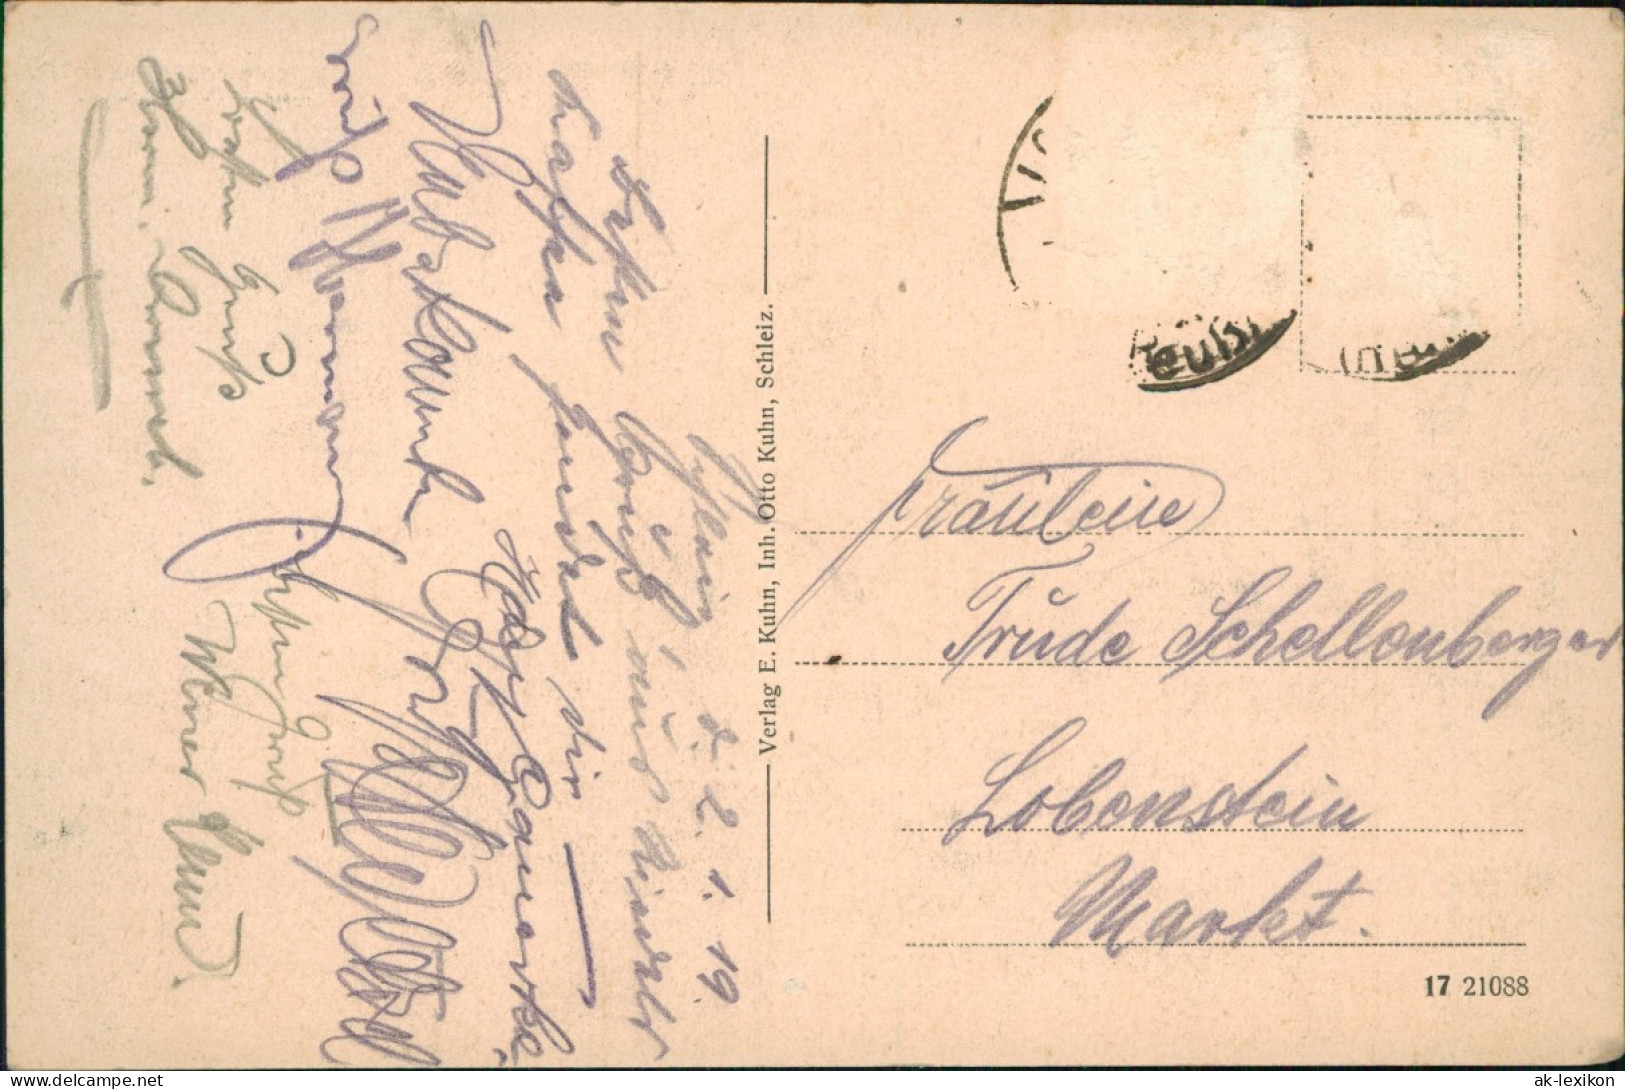 Ansichtskarte Schleiz Totale 1919 - Schleiz